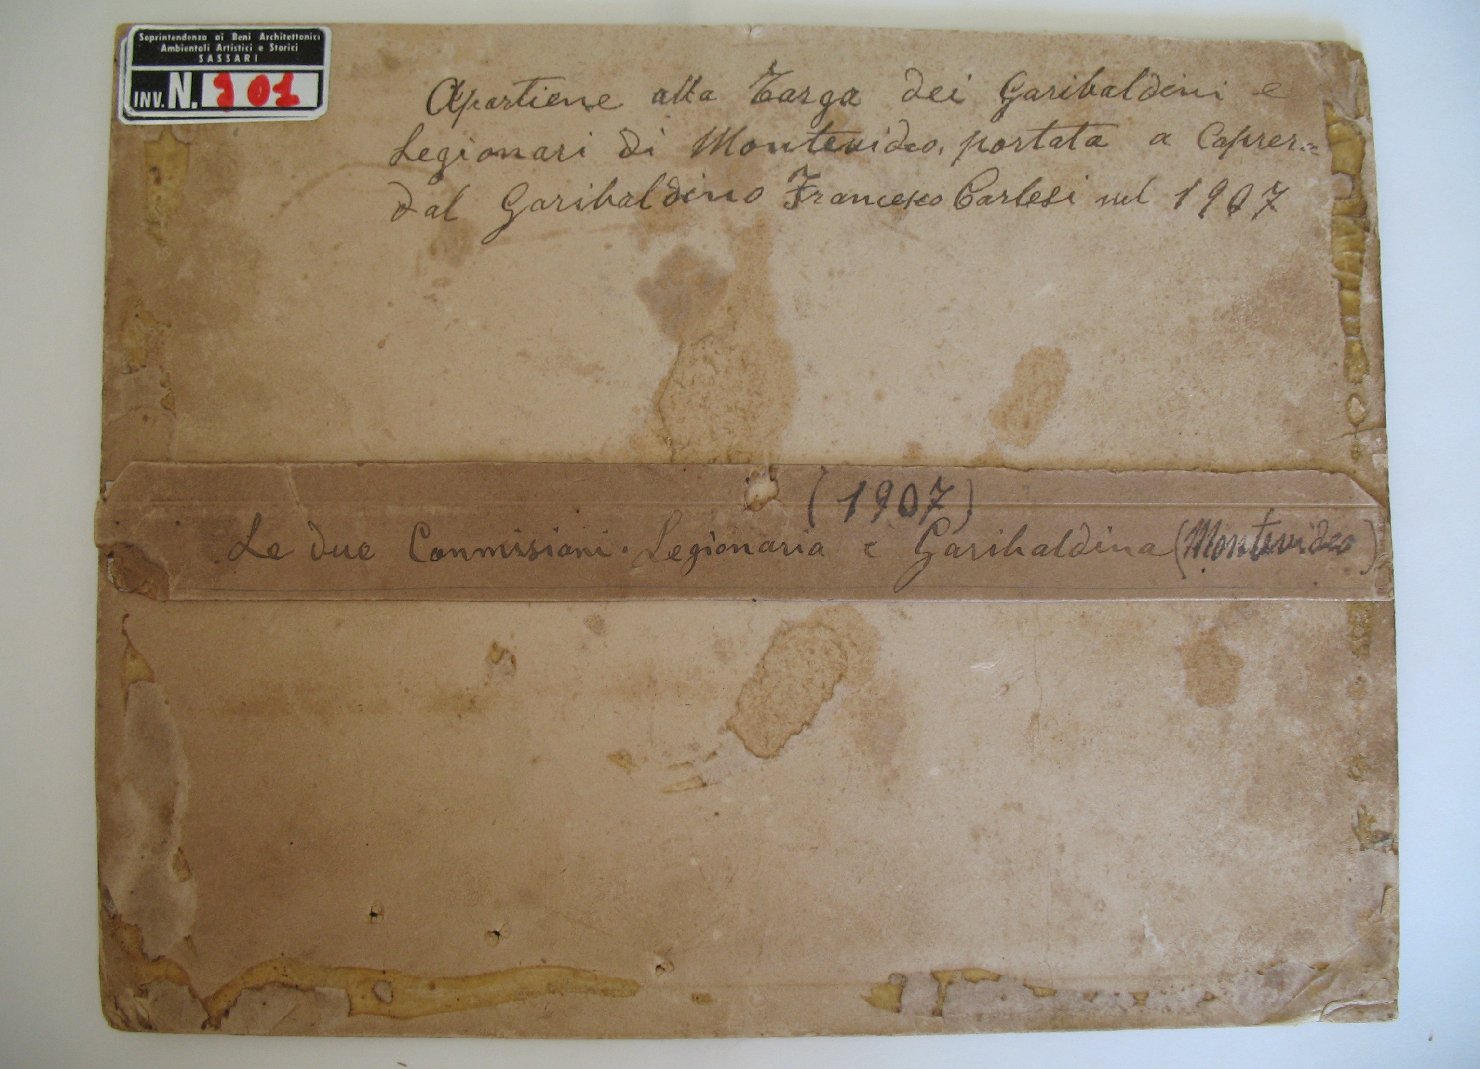 Garibaldini. Commissioni Legionaria e Garibaldina di Montevideo (positivo) di anonimo (studio) (inizio XX)